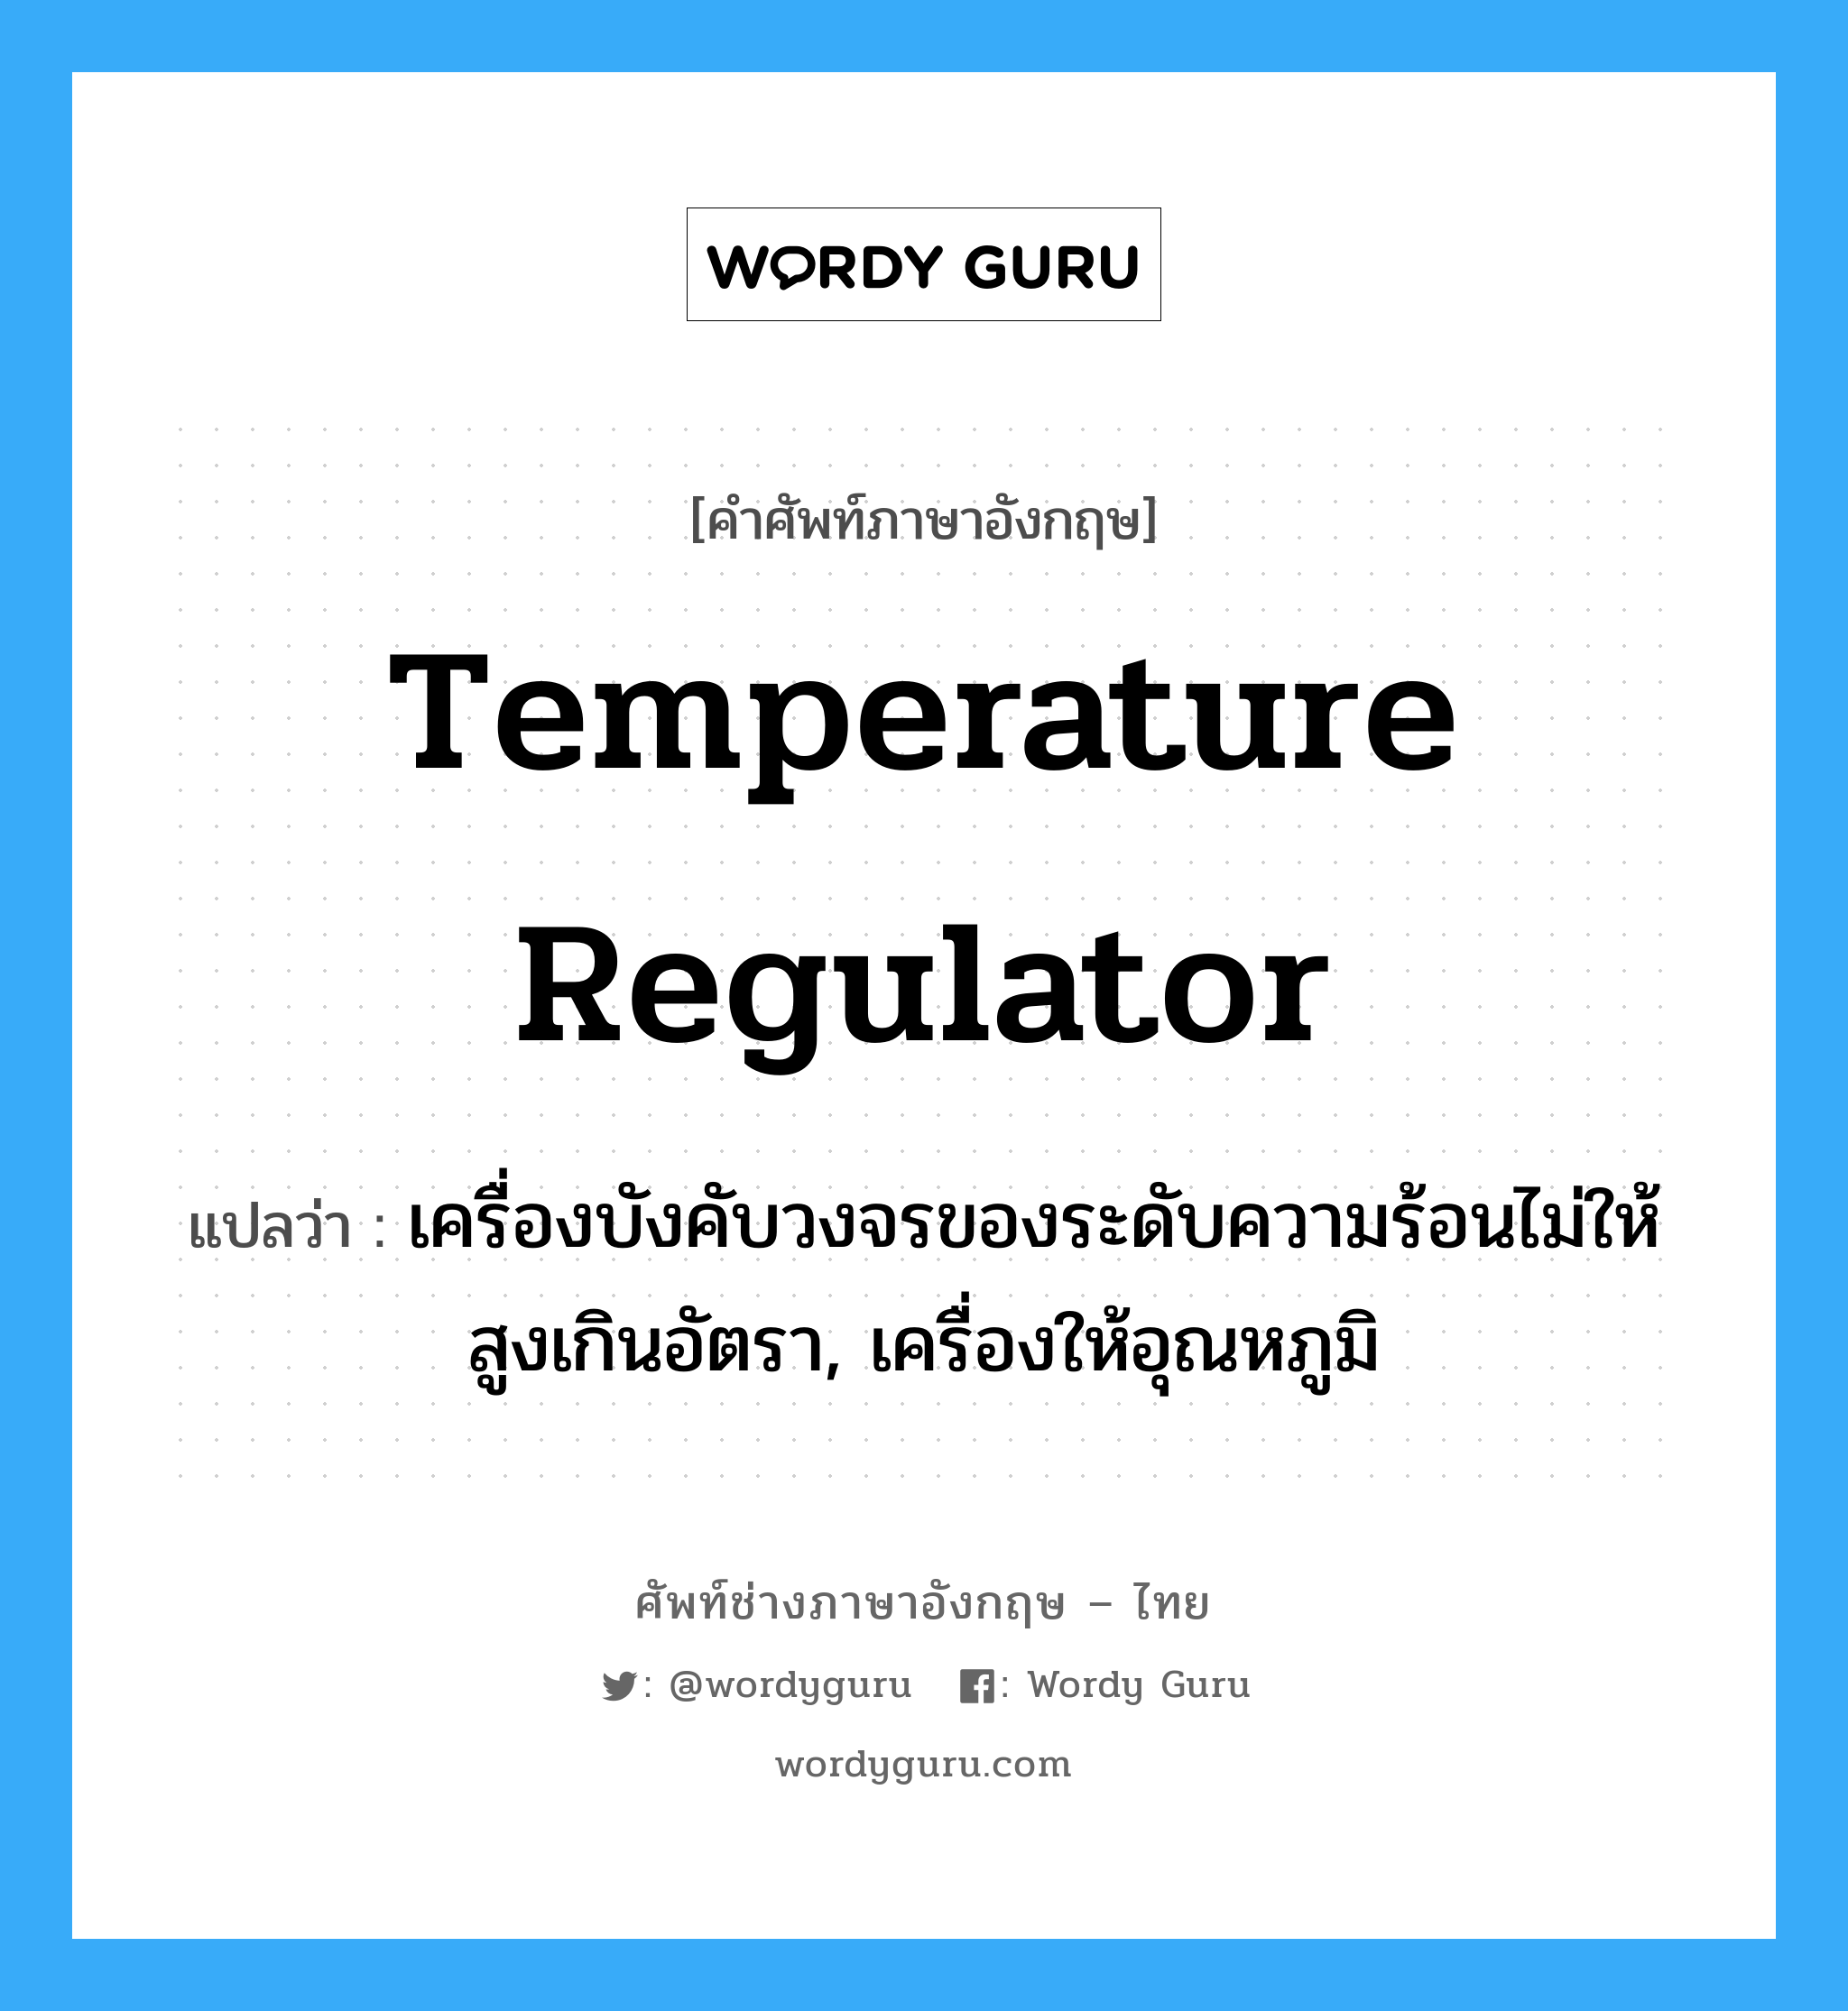 temperature regulator แปลว่า?, คำศัพท์ช่างภาษาอังกฤษ - ไทย temperature regulator คำศัพท์ภาษาอังกฤษ temperature regulator แปลว่า เครื่องบังคับวงจรของระดับความร้อนไม่ให้สูงเกินอัตรา, เครื่องให้อุณหภูมิ